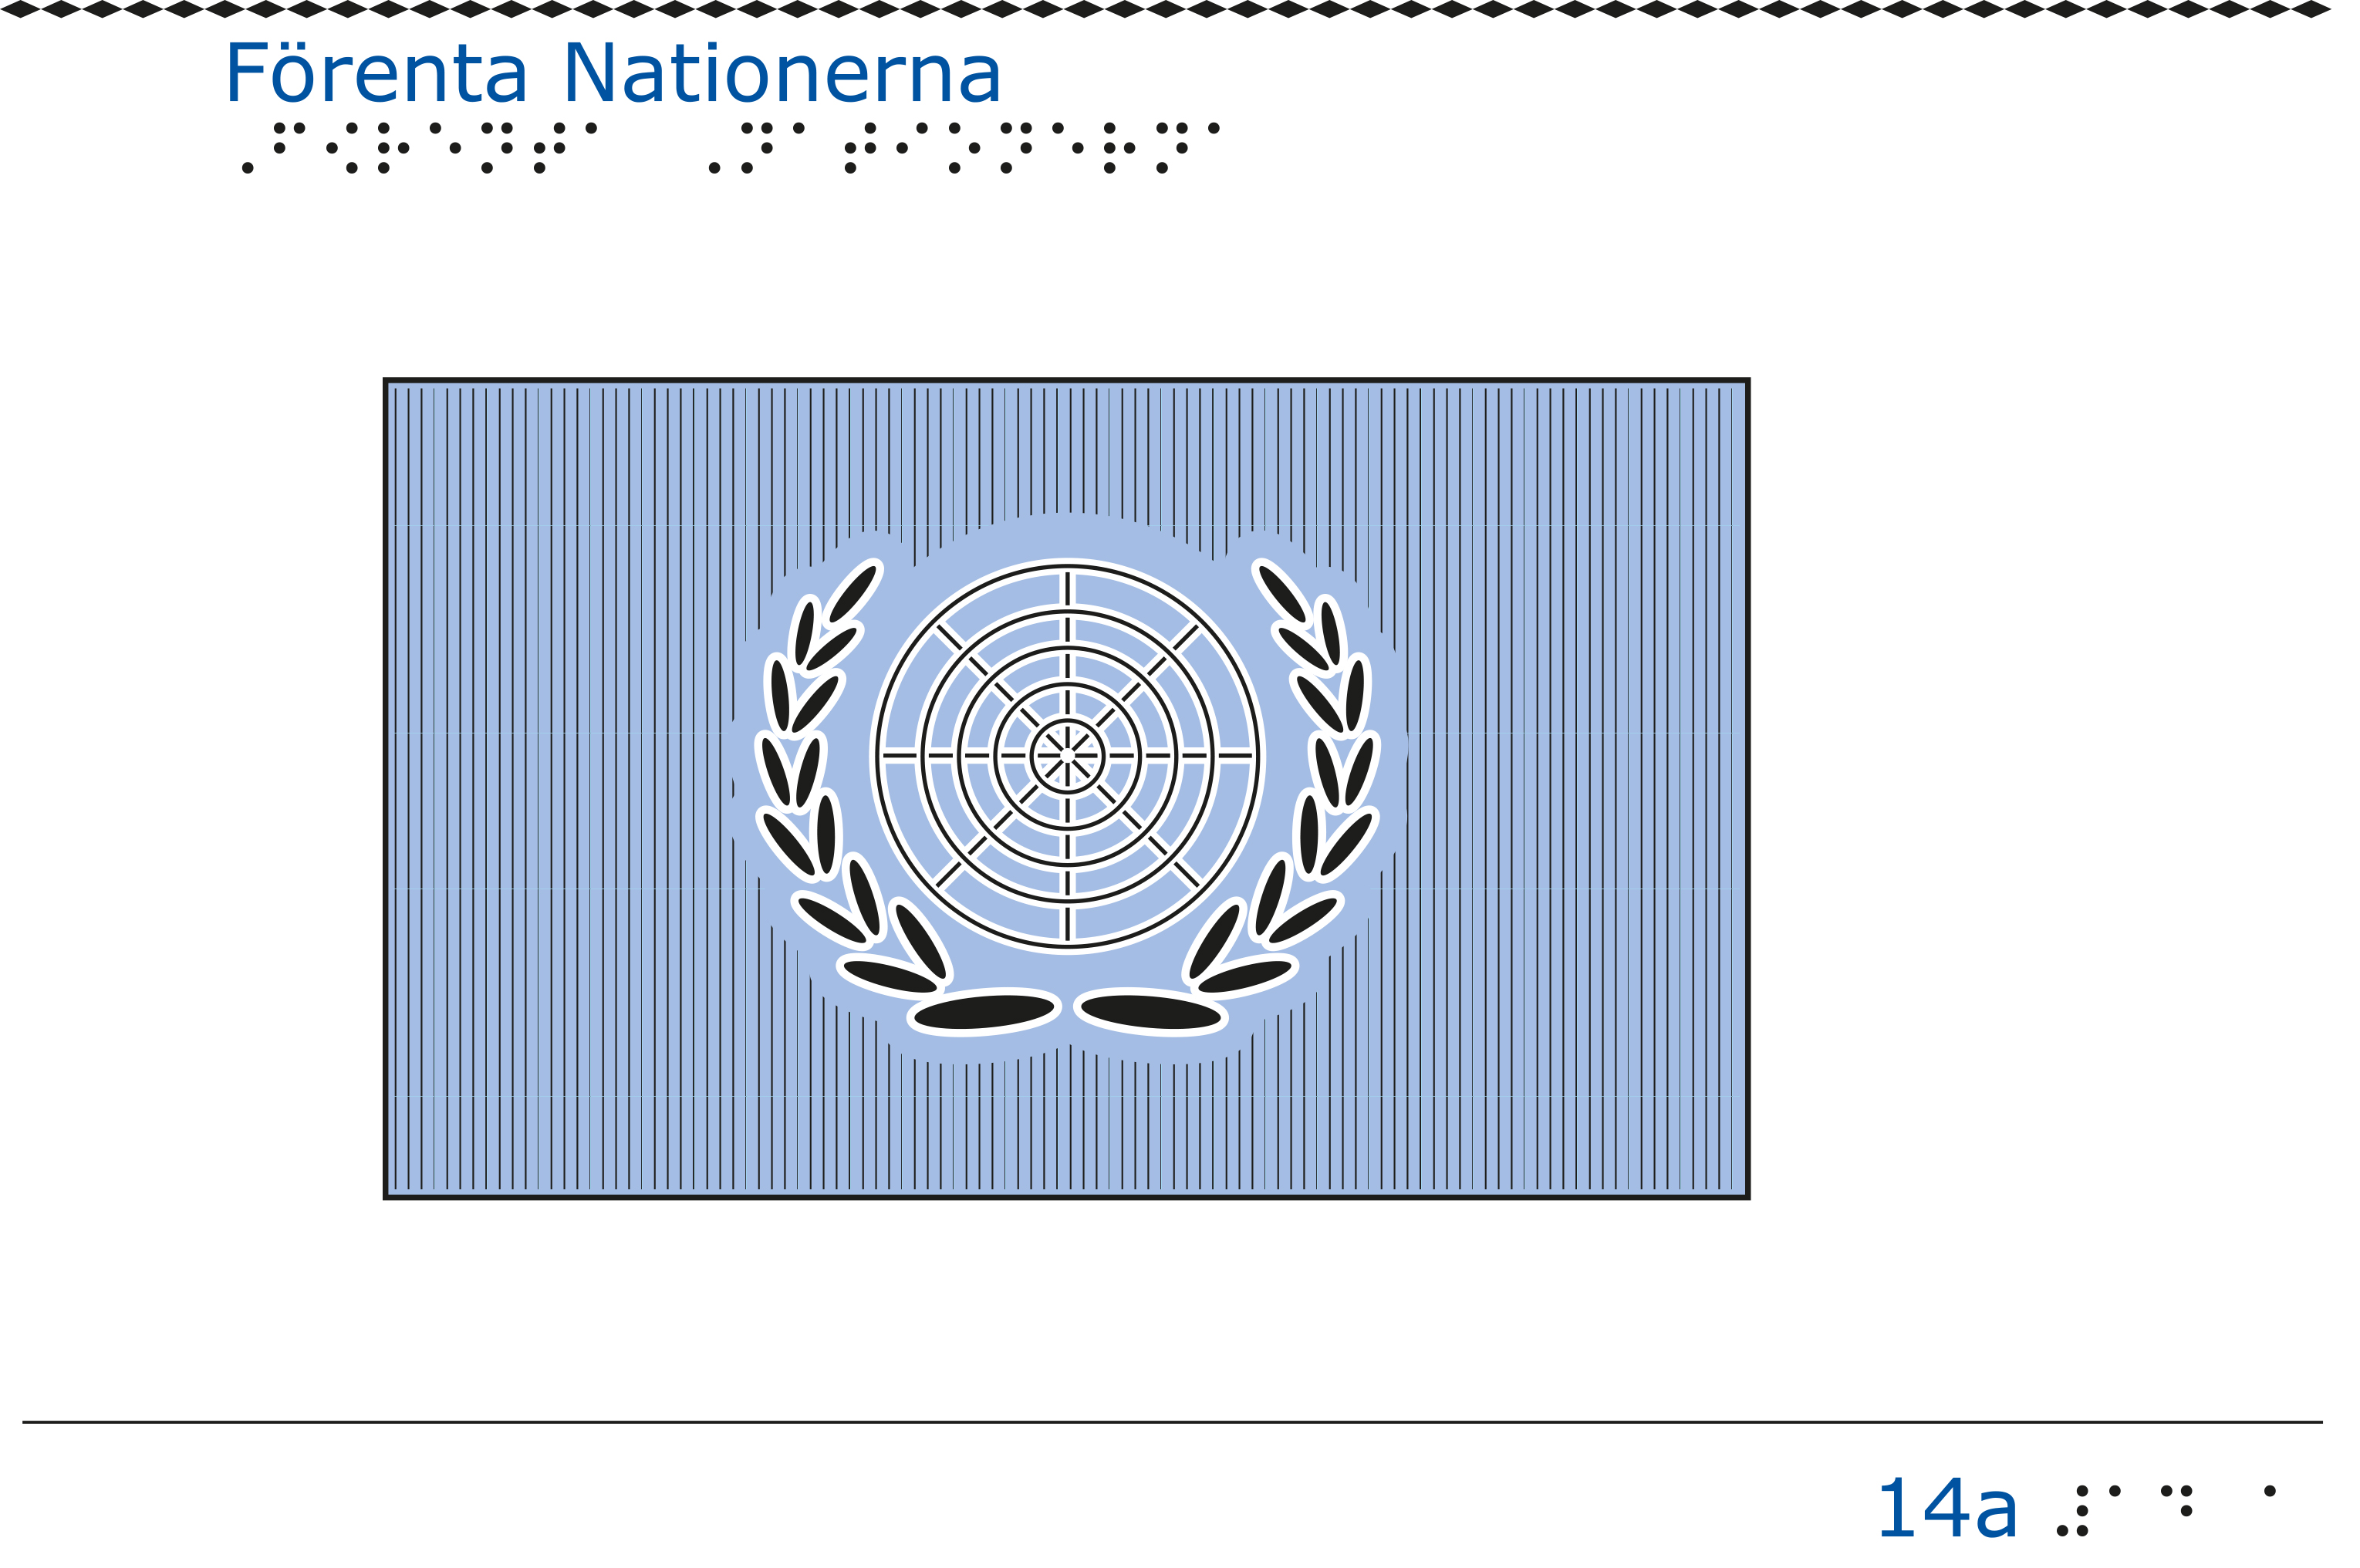 Taktil bild - FNs flagga.